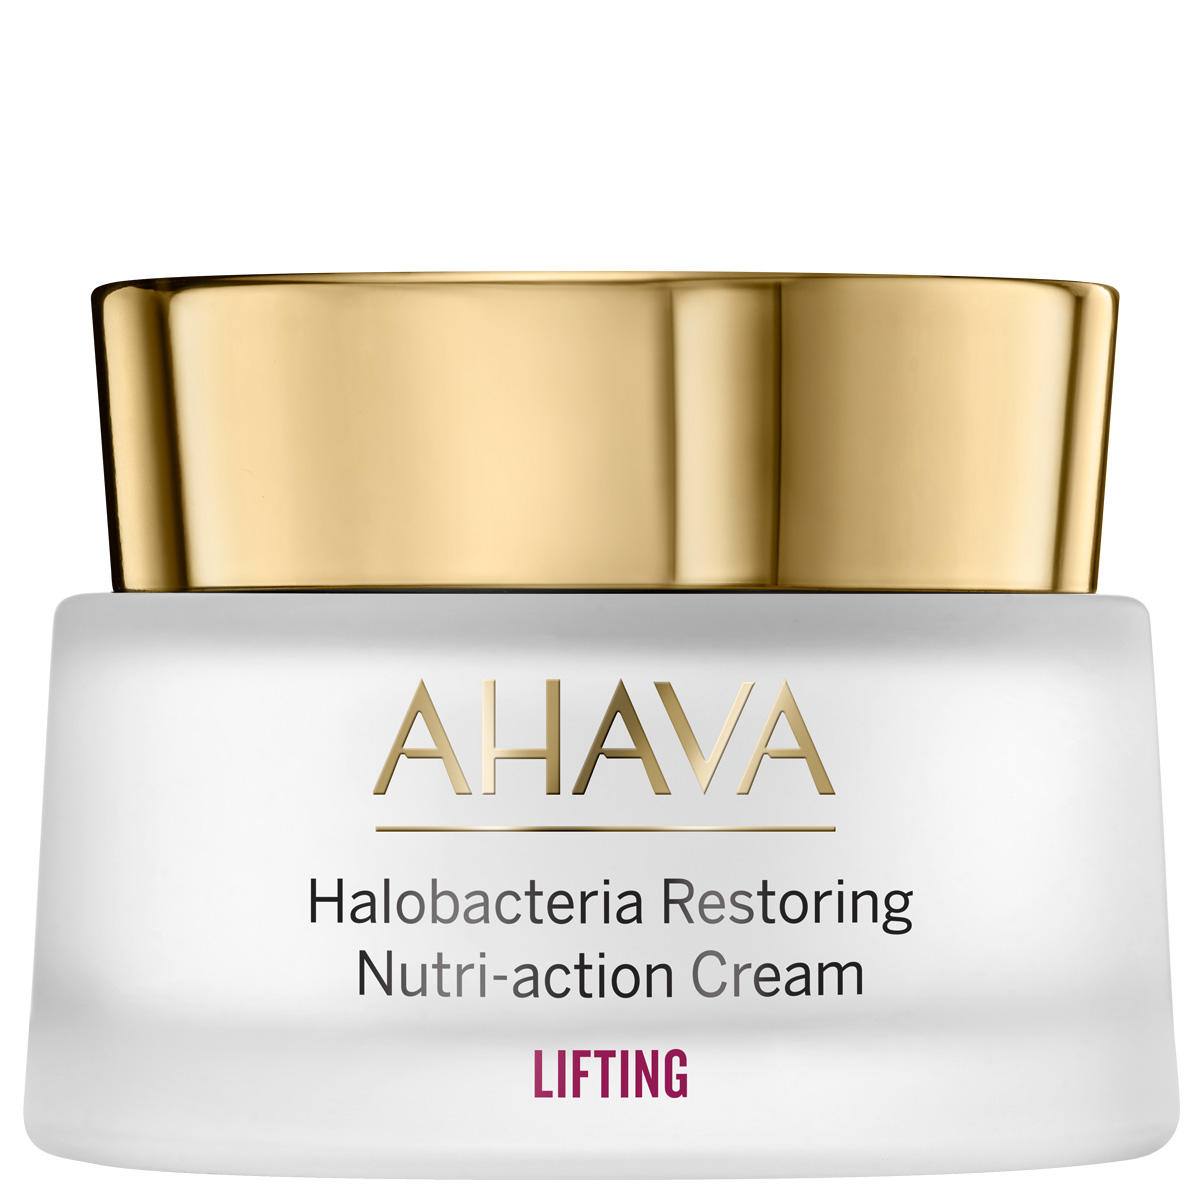 AHAVA Halobacteria Restoring Nutri-action Cream 50 ml - 1